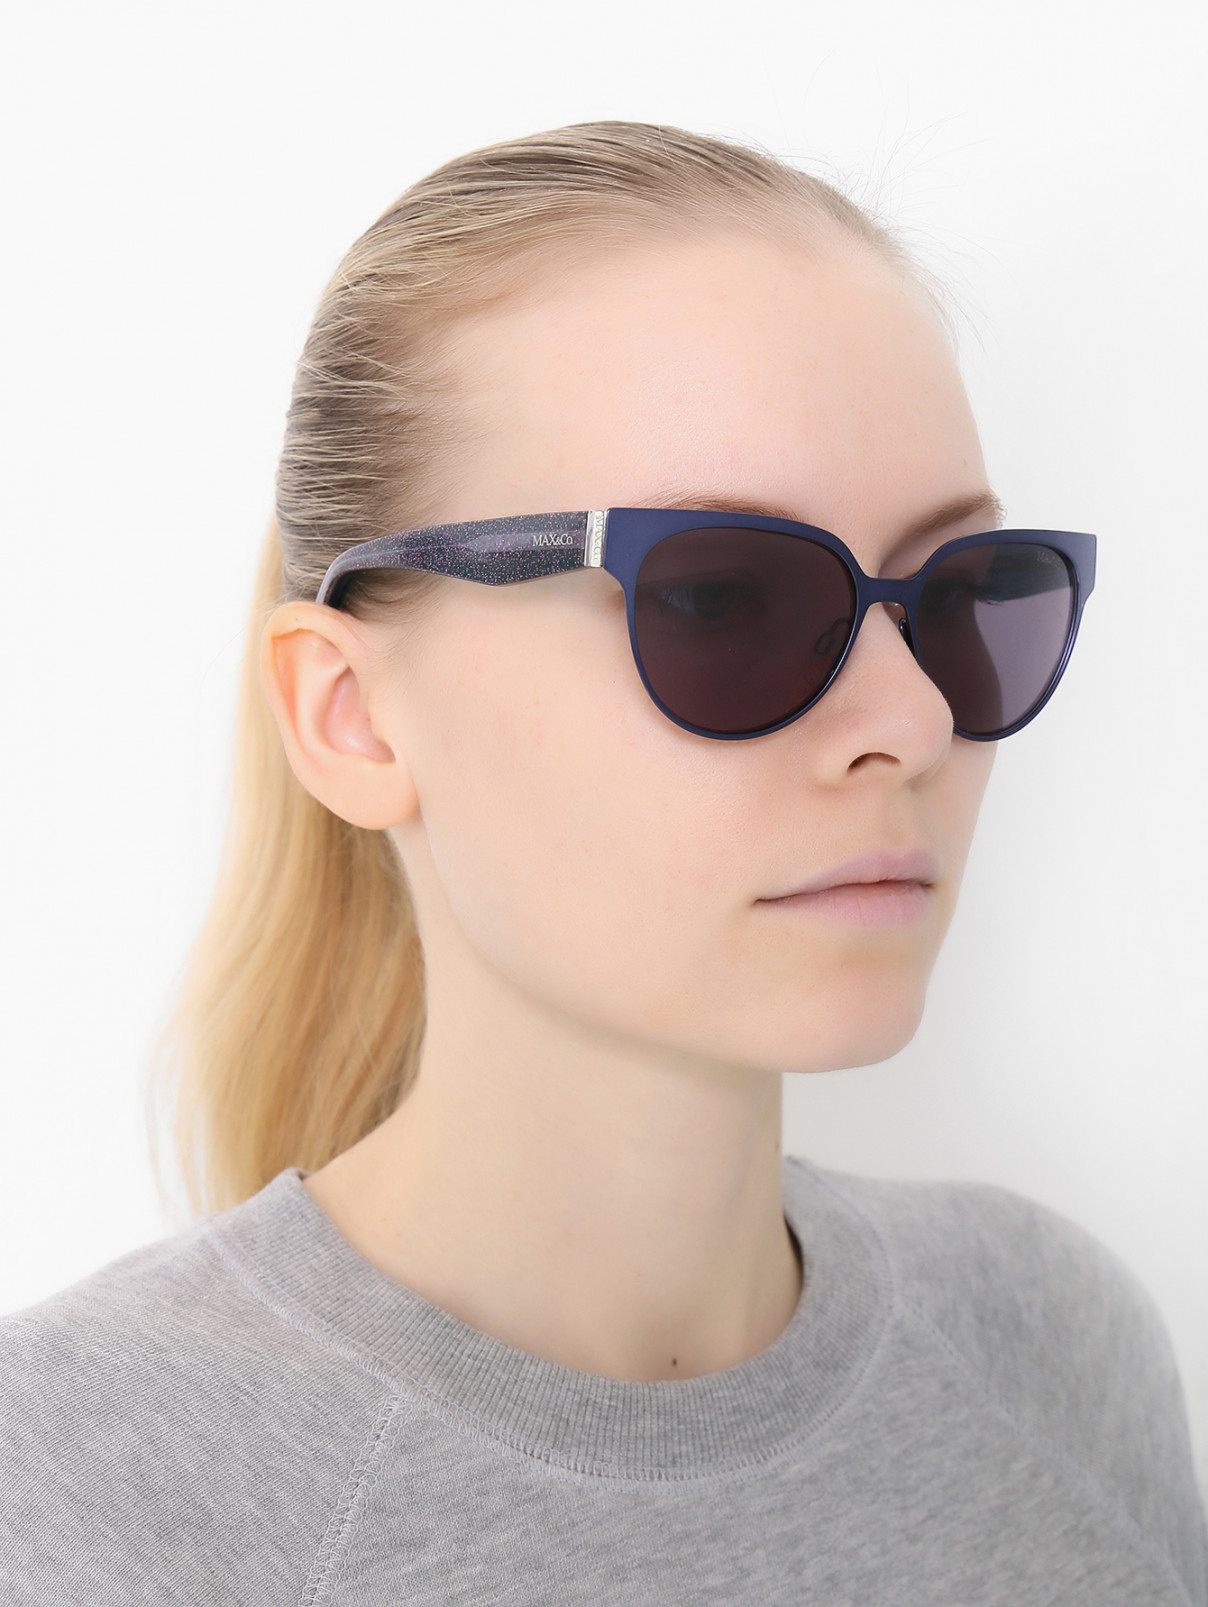 Солнцезащитные очки в оправе из пластика и металла Max&Co  –  Модель Общий вид  – Цвет:  Синий